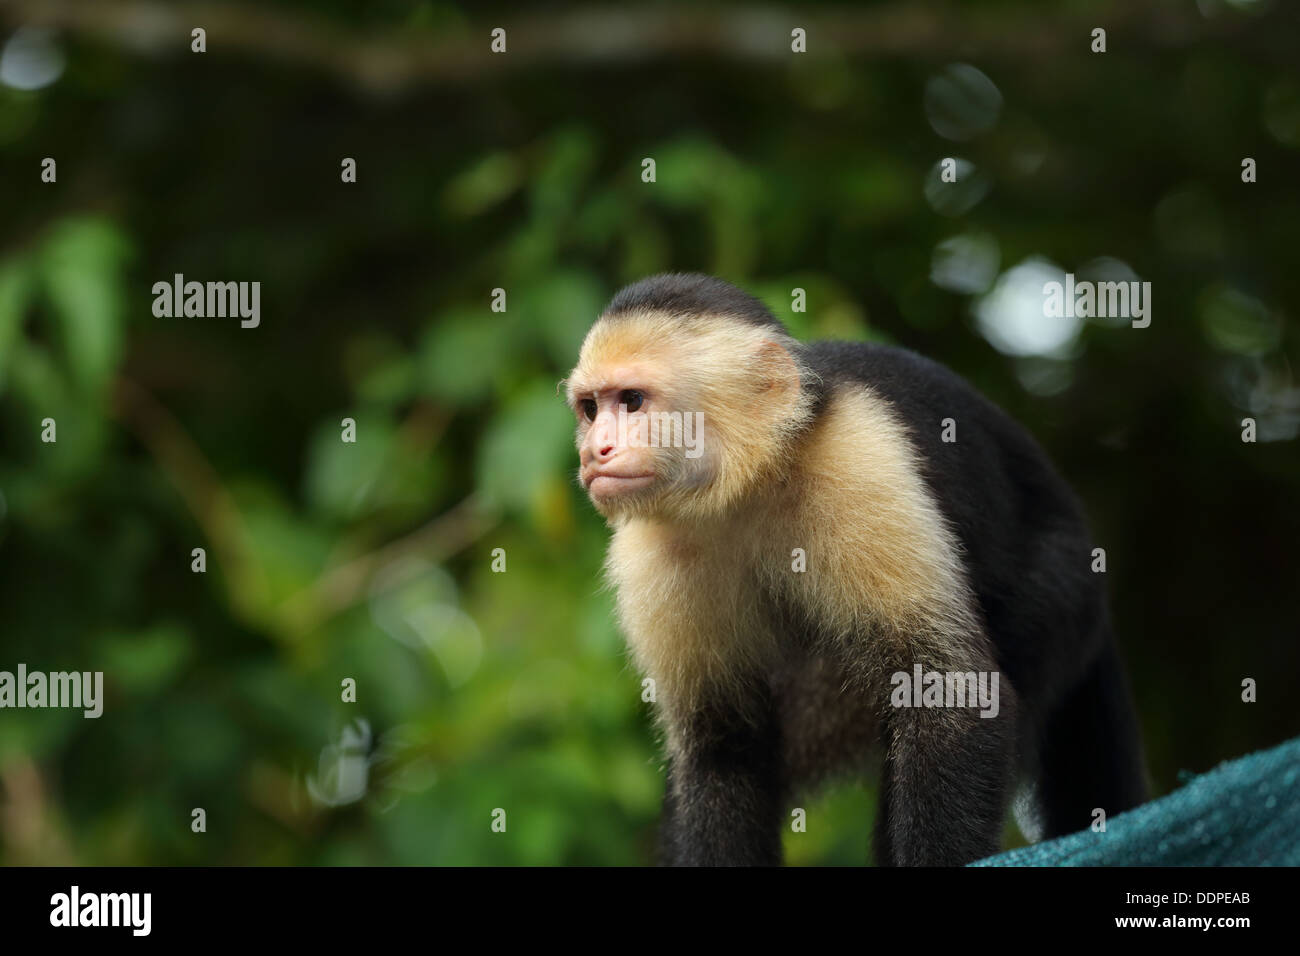 Scimmia cappuccino nella struttura ad albero, Manuel Antonio, Costa Rica. Foto Stock